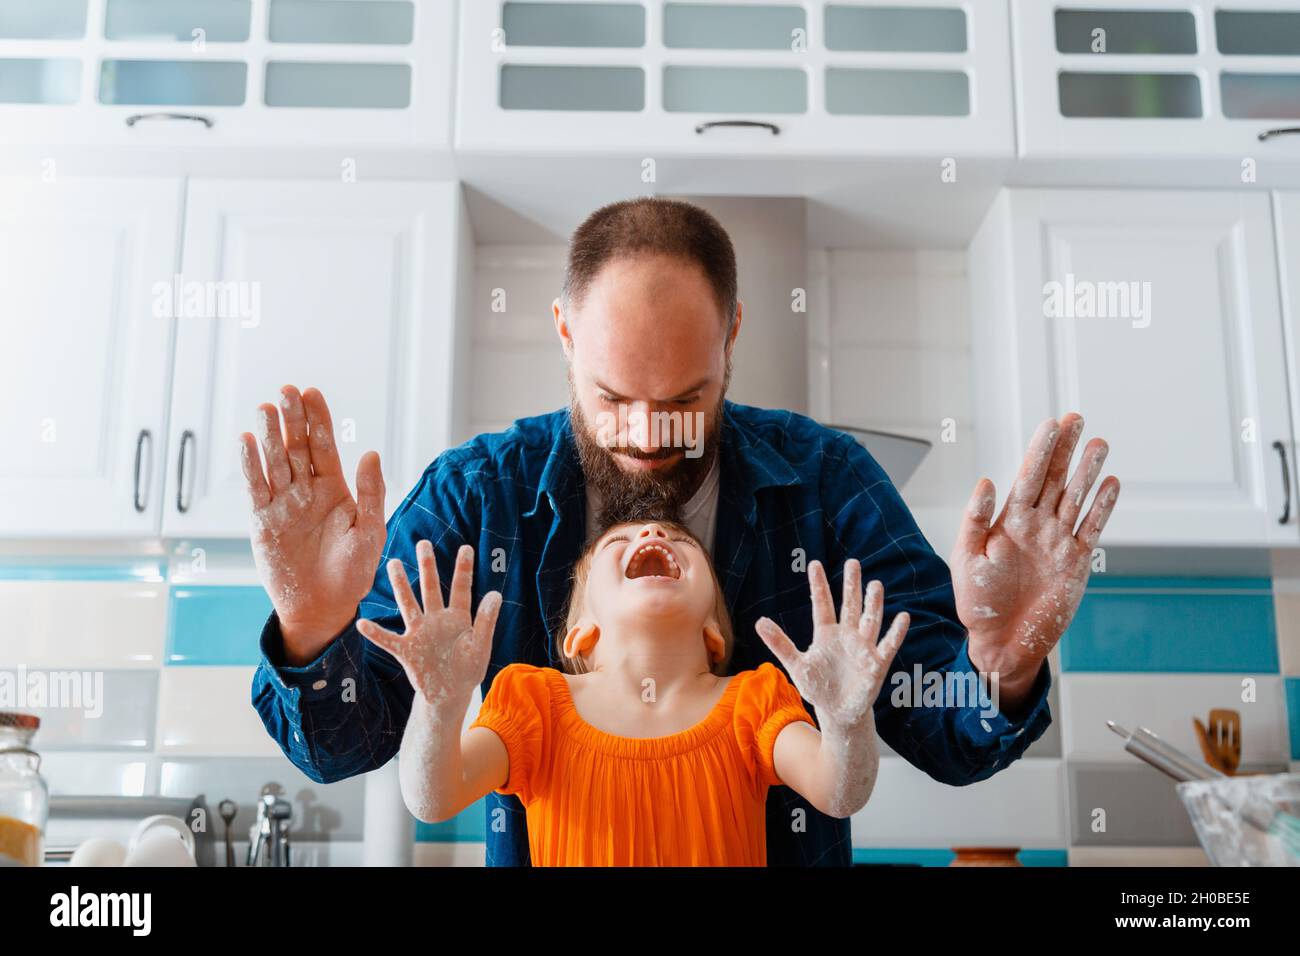 Kleines Mädchen haben Spaß spielen mit Papa beim Kochen Backen in der Küche. Tochter und kaukasischer Vater zeigen nach dem Teig die Hände schmutzig, lachen viel Spaß Stockfoto